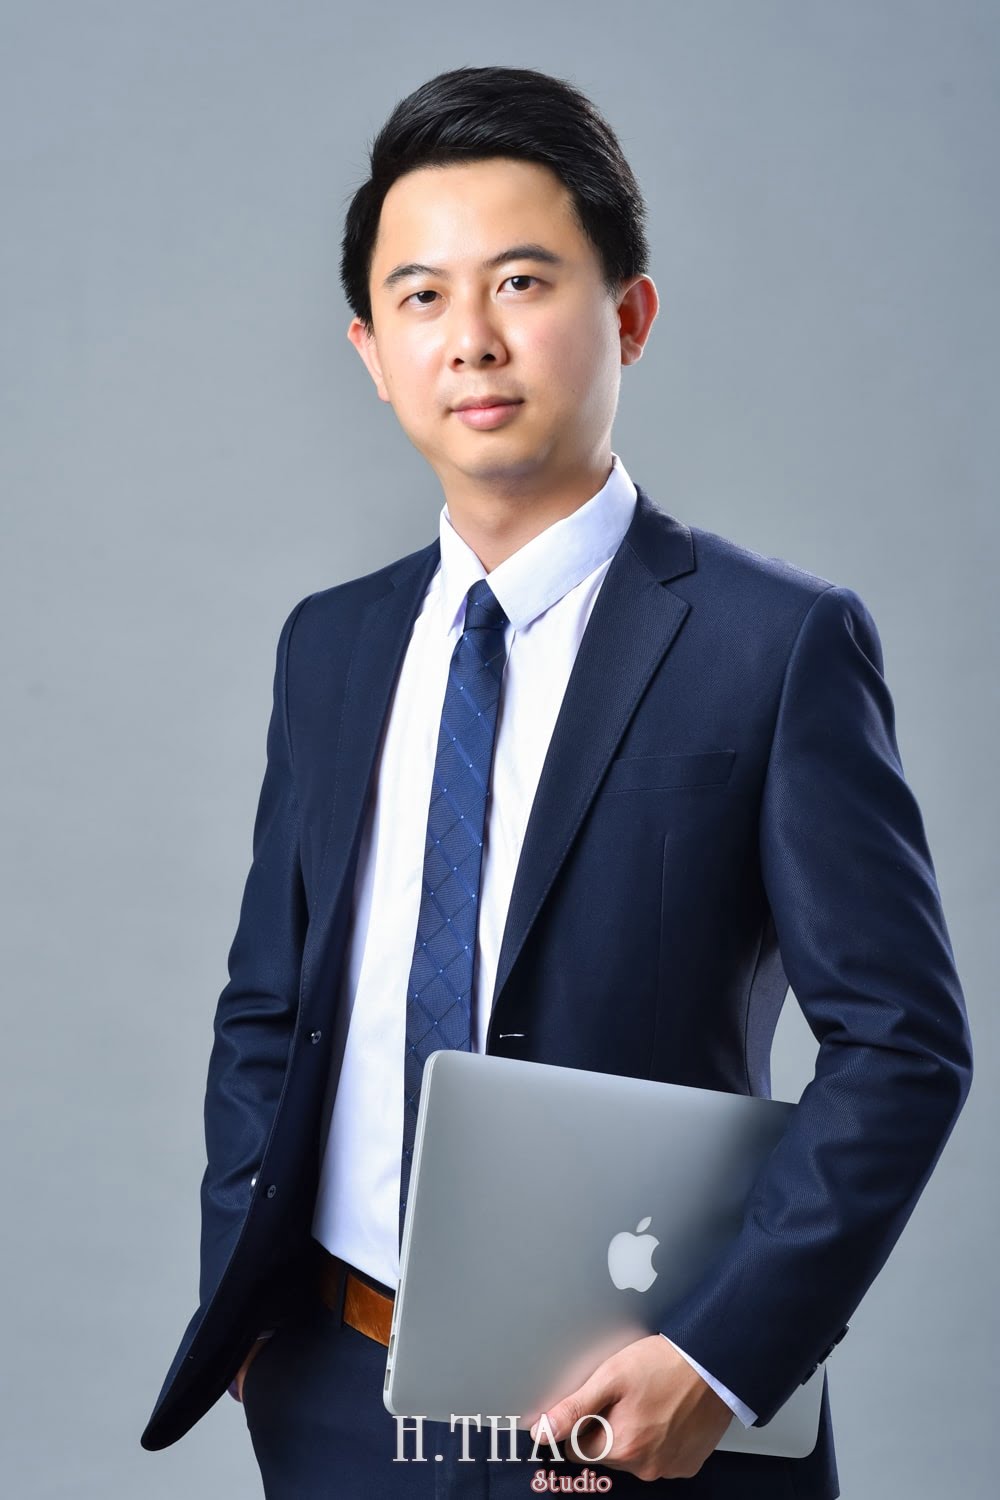 Anh profile  11 min - Tổng hợp ảnh profile nghề nghiệp bác sĩ, ngân hàng đẹp- HThao Studio